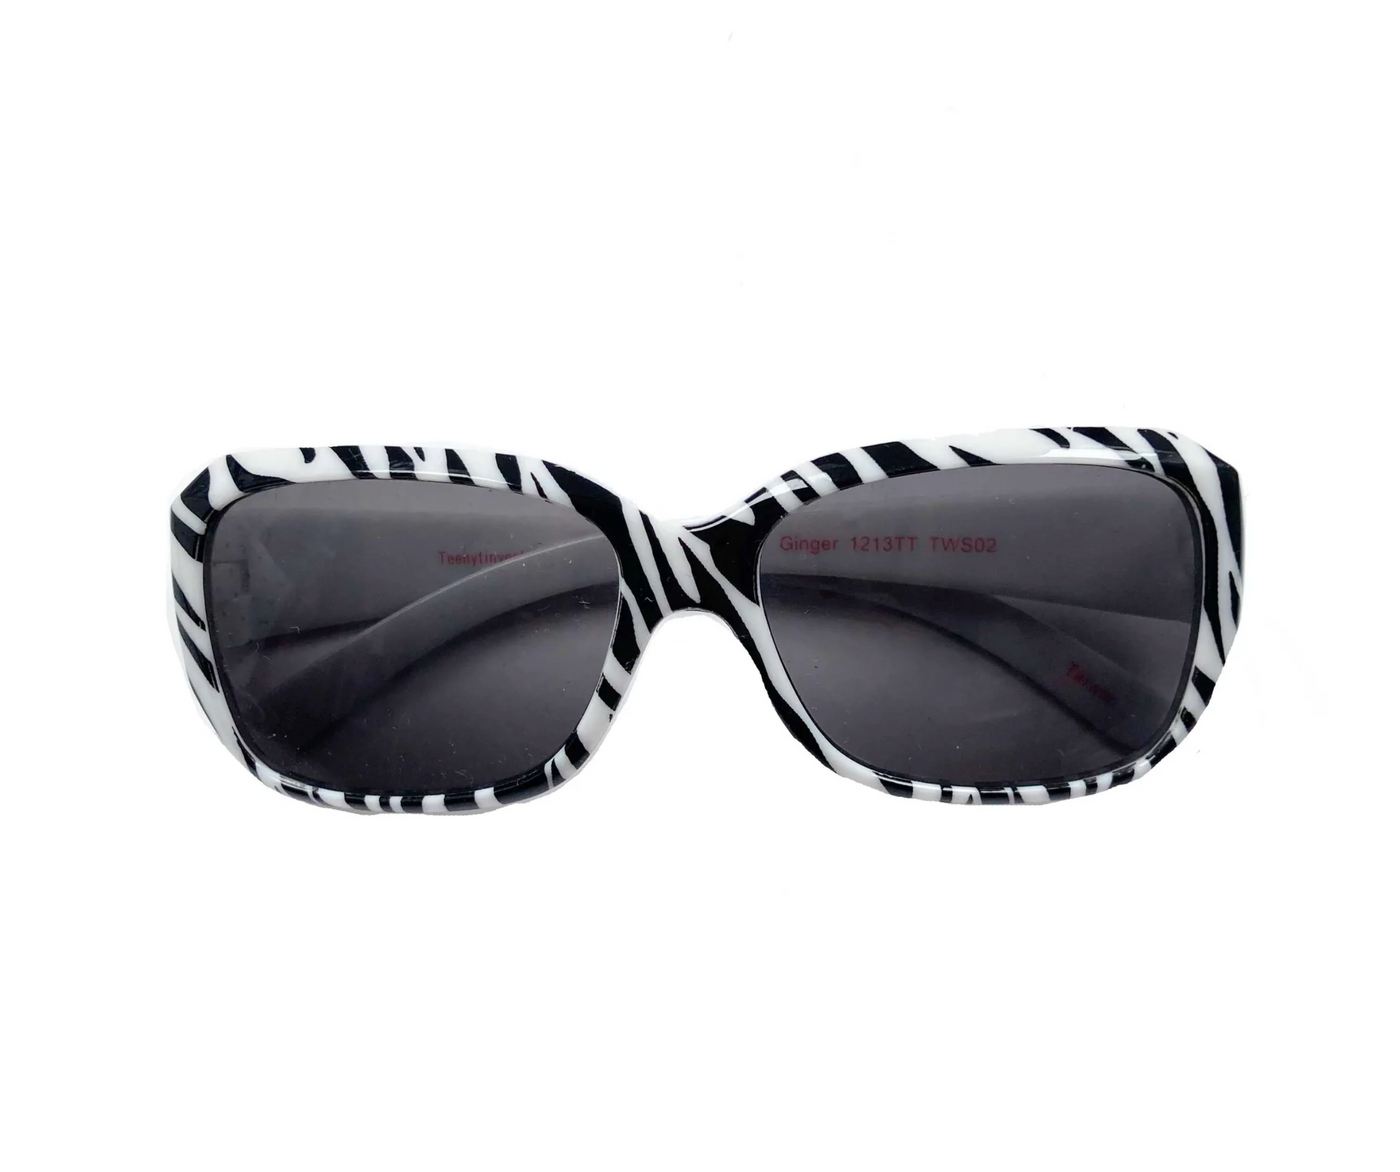 Teeny Tiny Optics Zebra Sunglasses